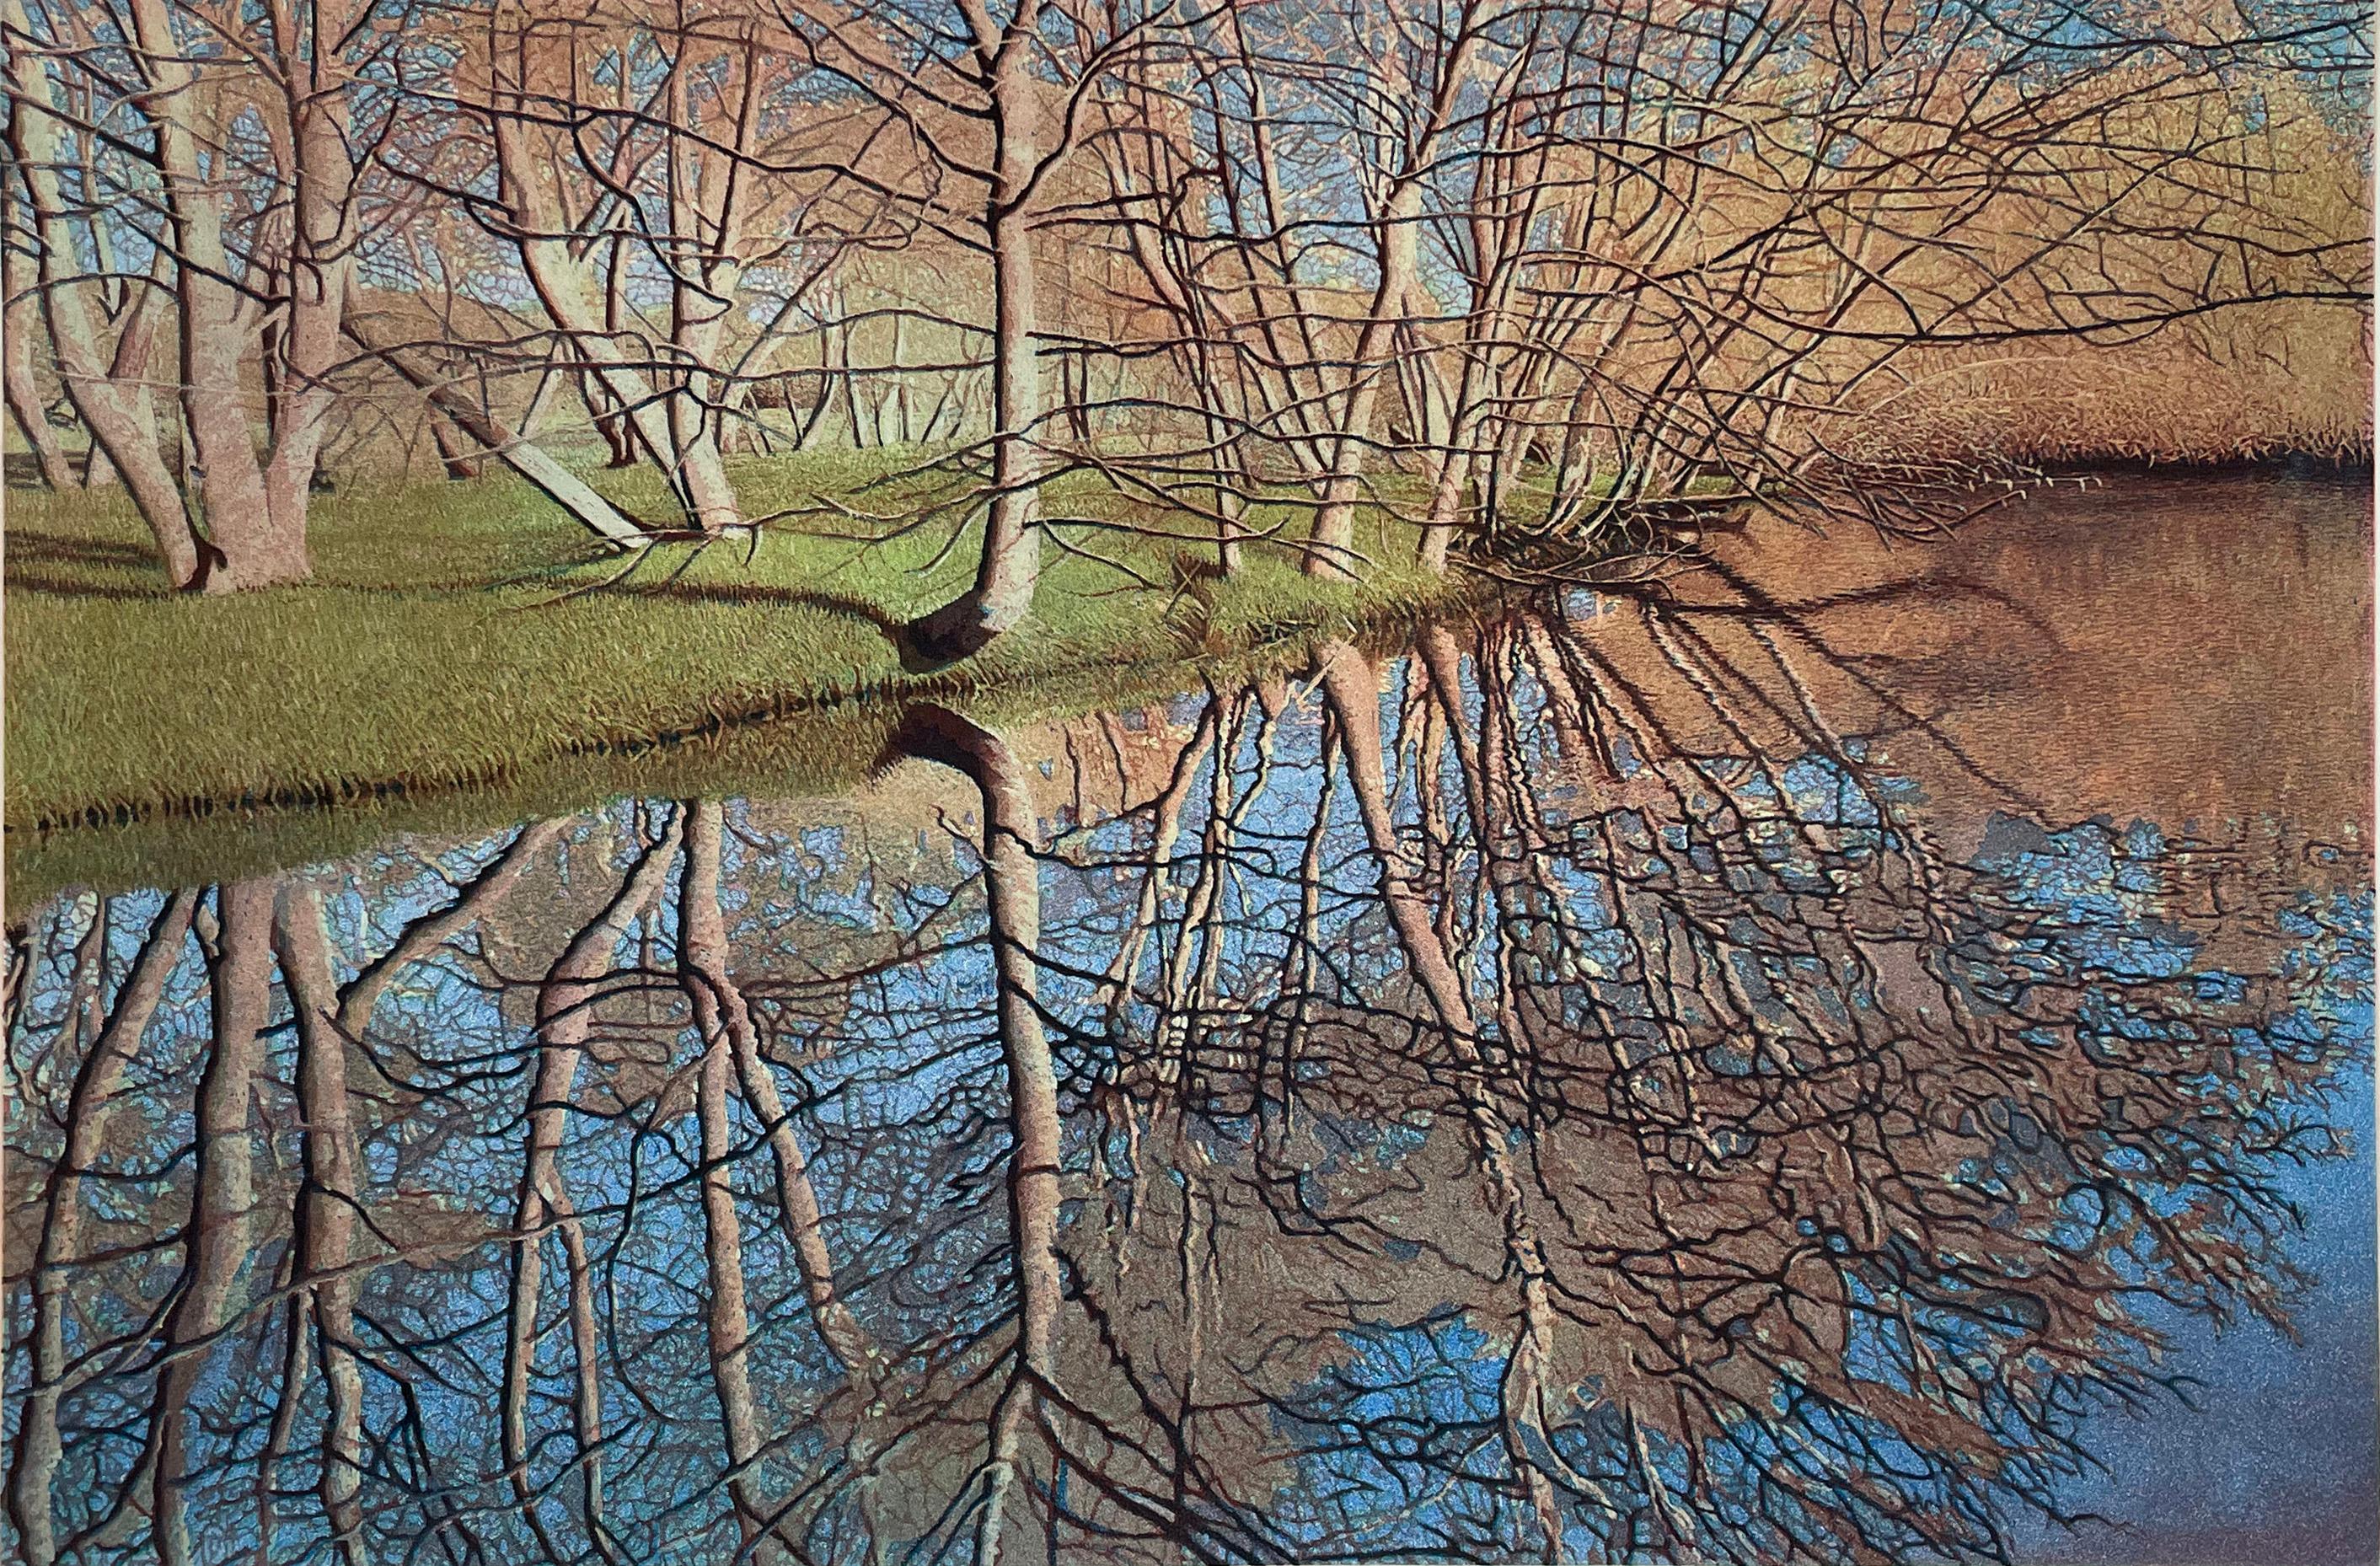 Signiert, betitelt und nummeriert in einer Auflage von 120 Exemplaren.  Erlenbäume spiegeln sich im Wasser des Bear Creek in Ashland, Oregon. Das erste Grün des Frühlings ziert das Ufer.

Er wurde am 21. Dezember 1949 in Berkeley, Kalifornien,